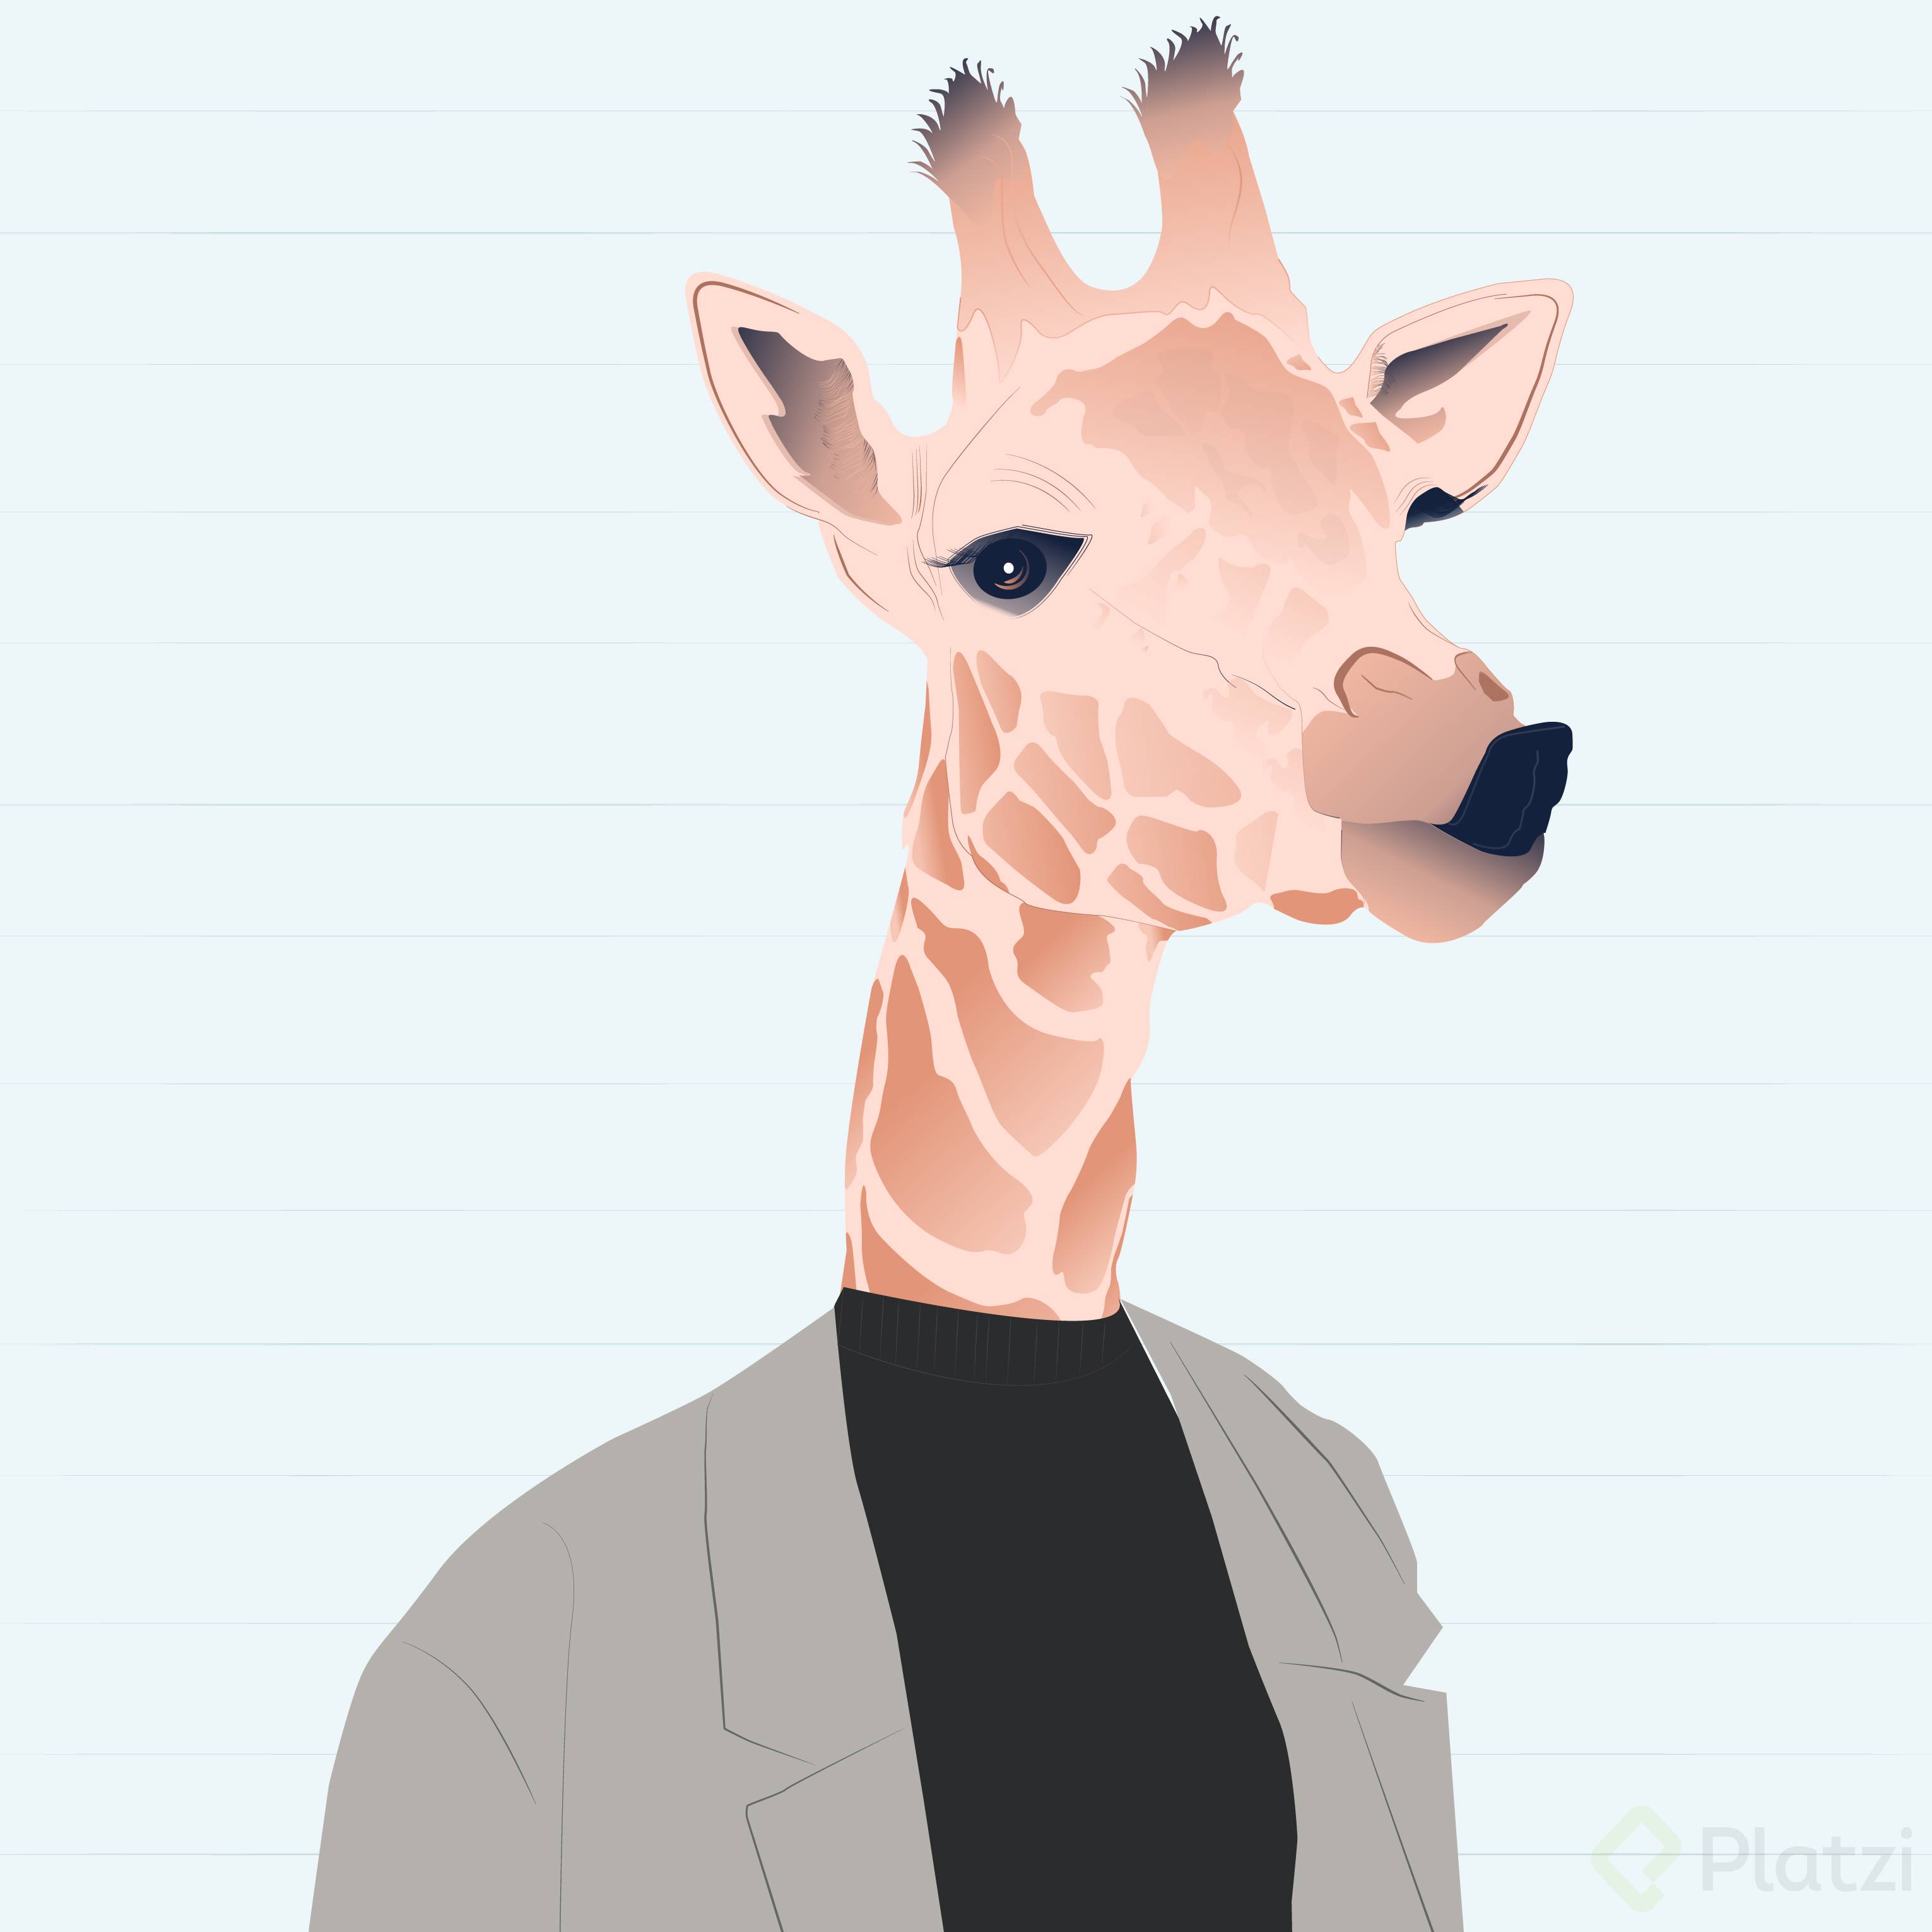 giraffe-01.jpg